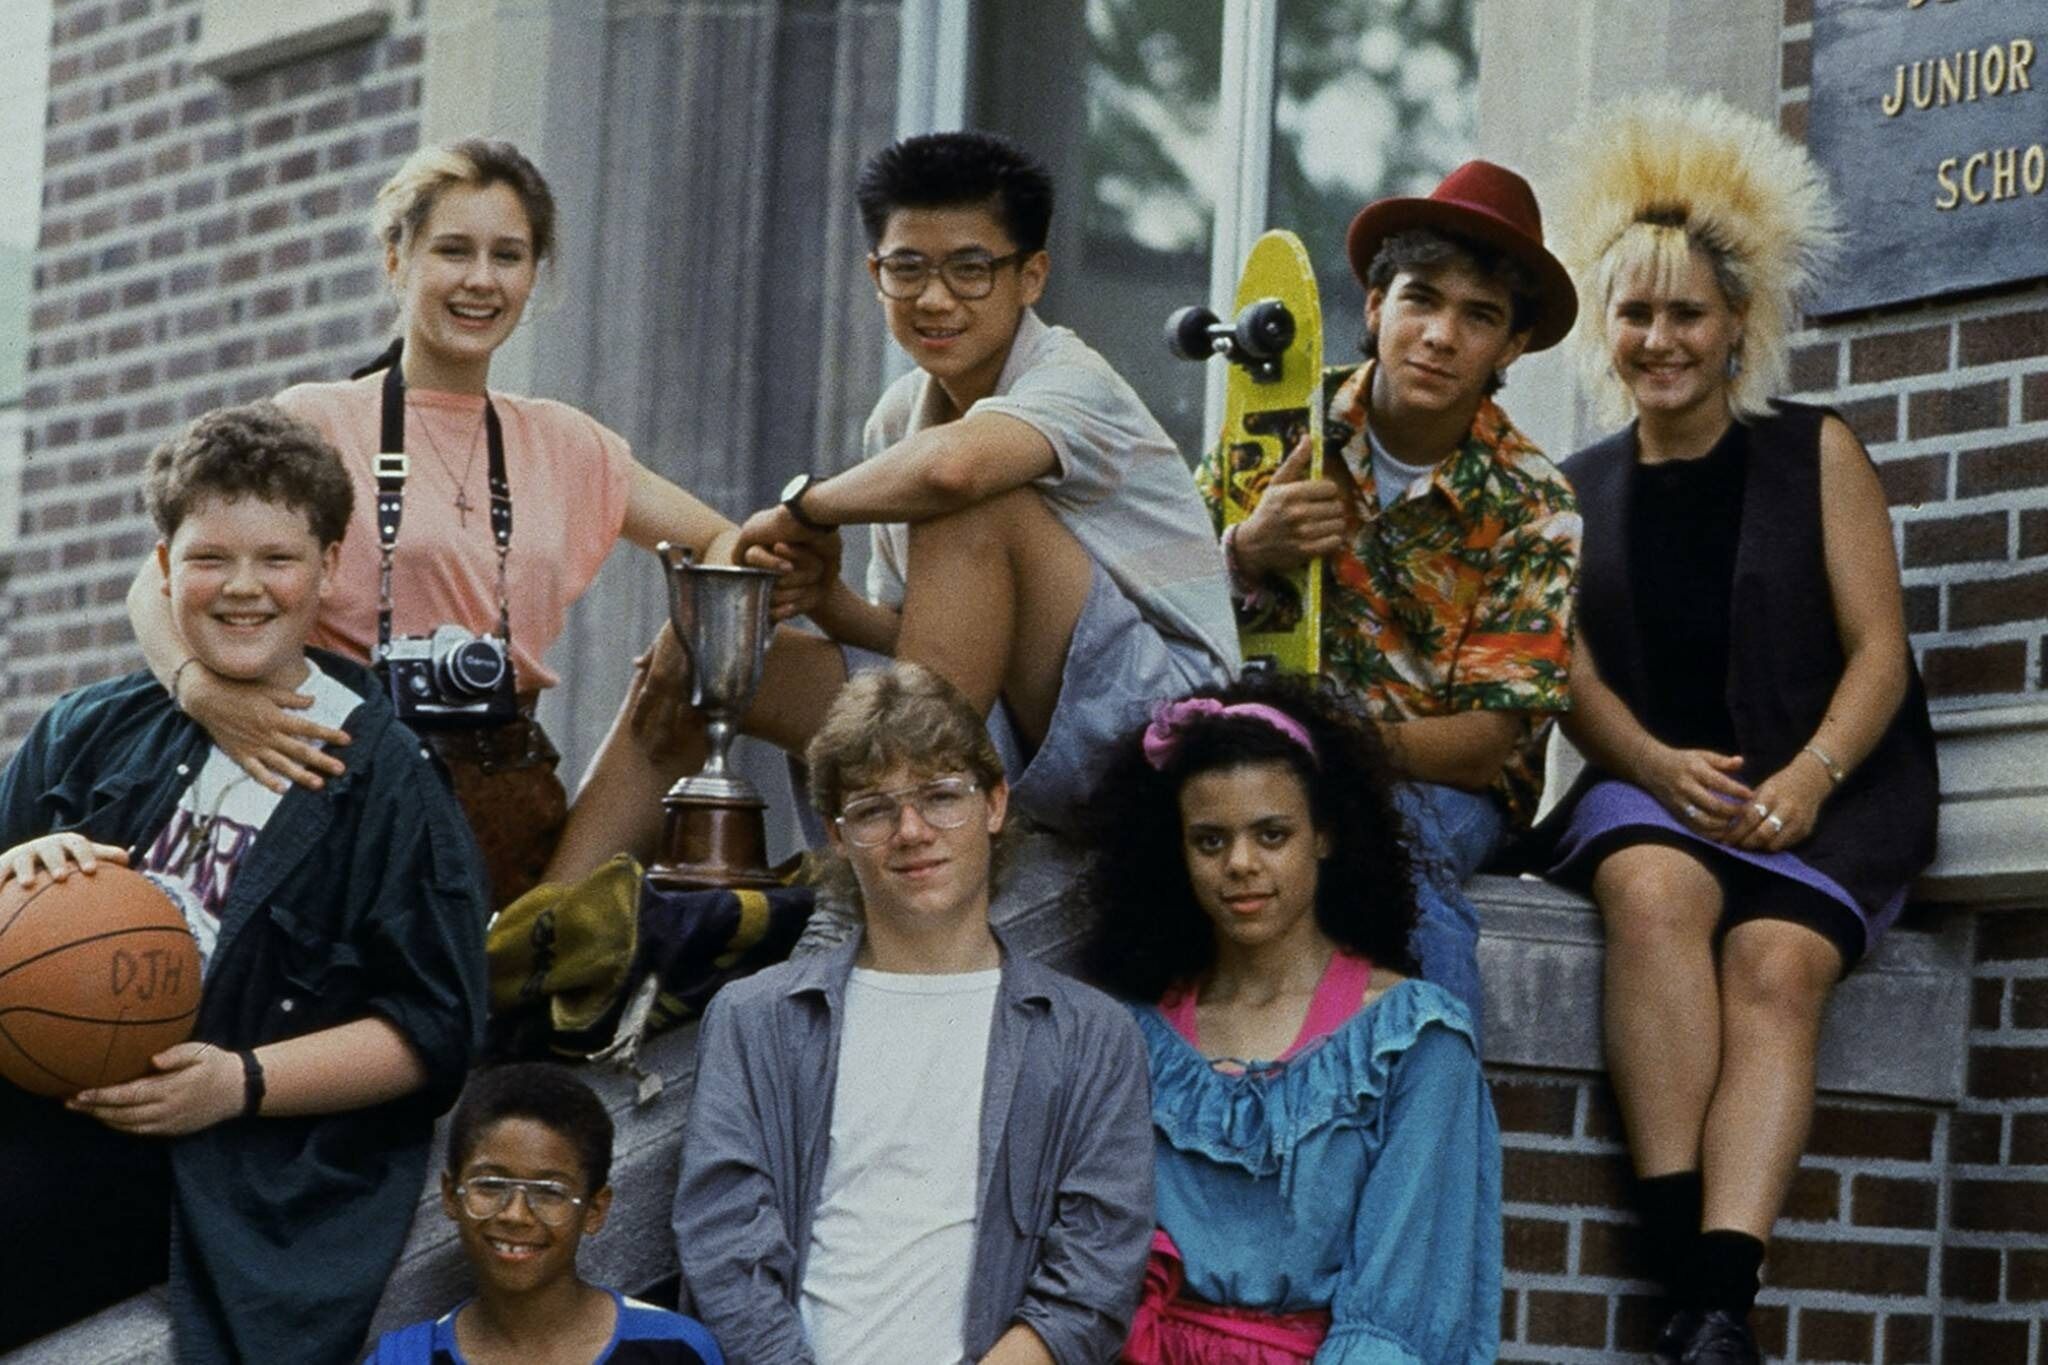 The original Degrassi Junior High School cast